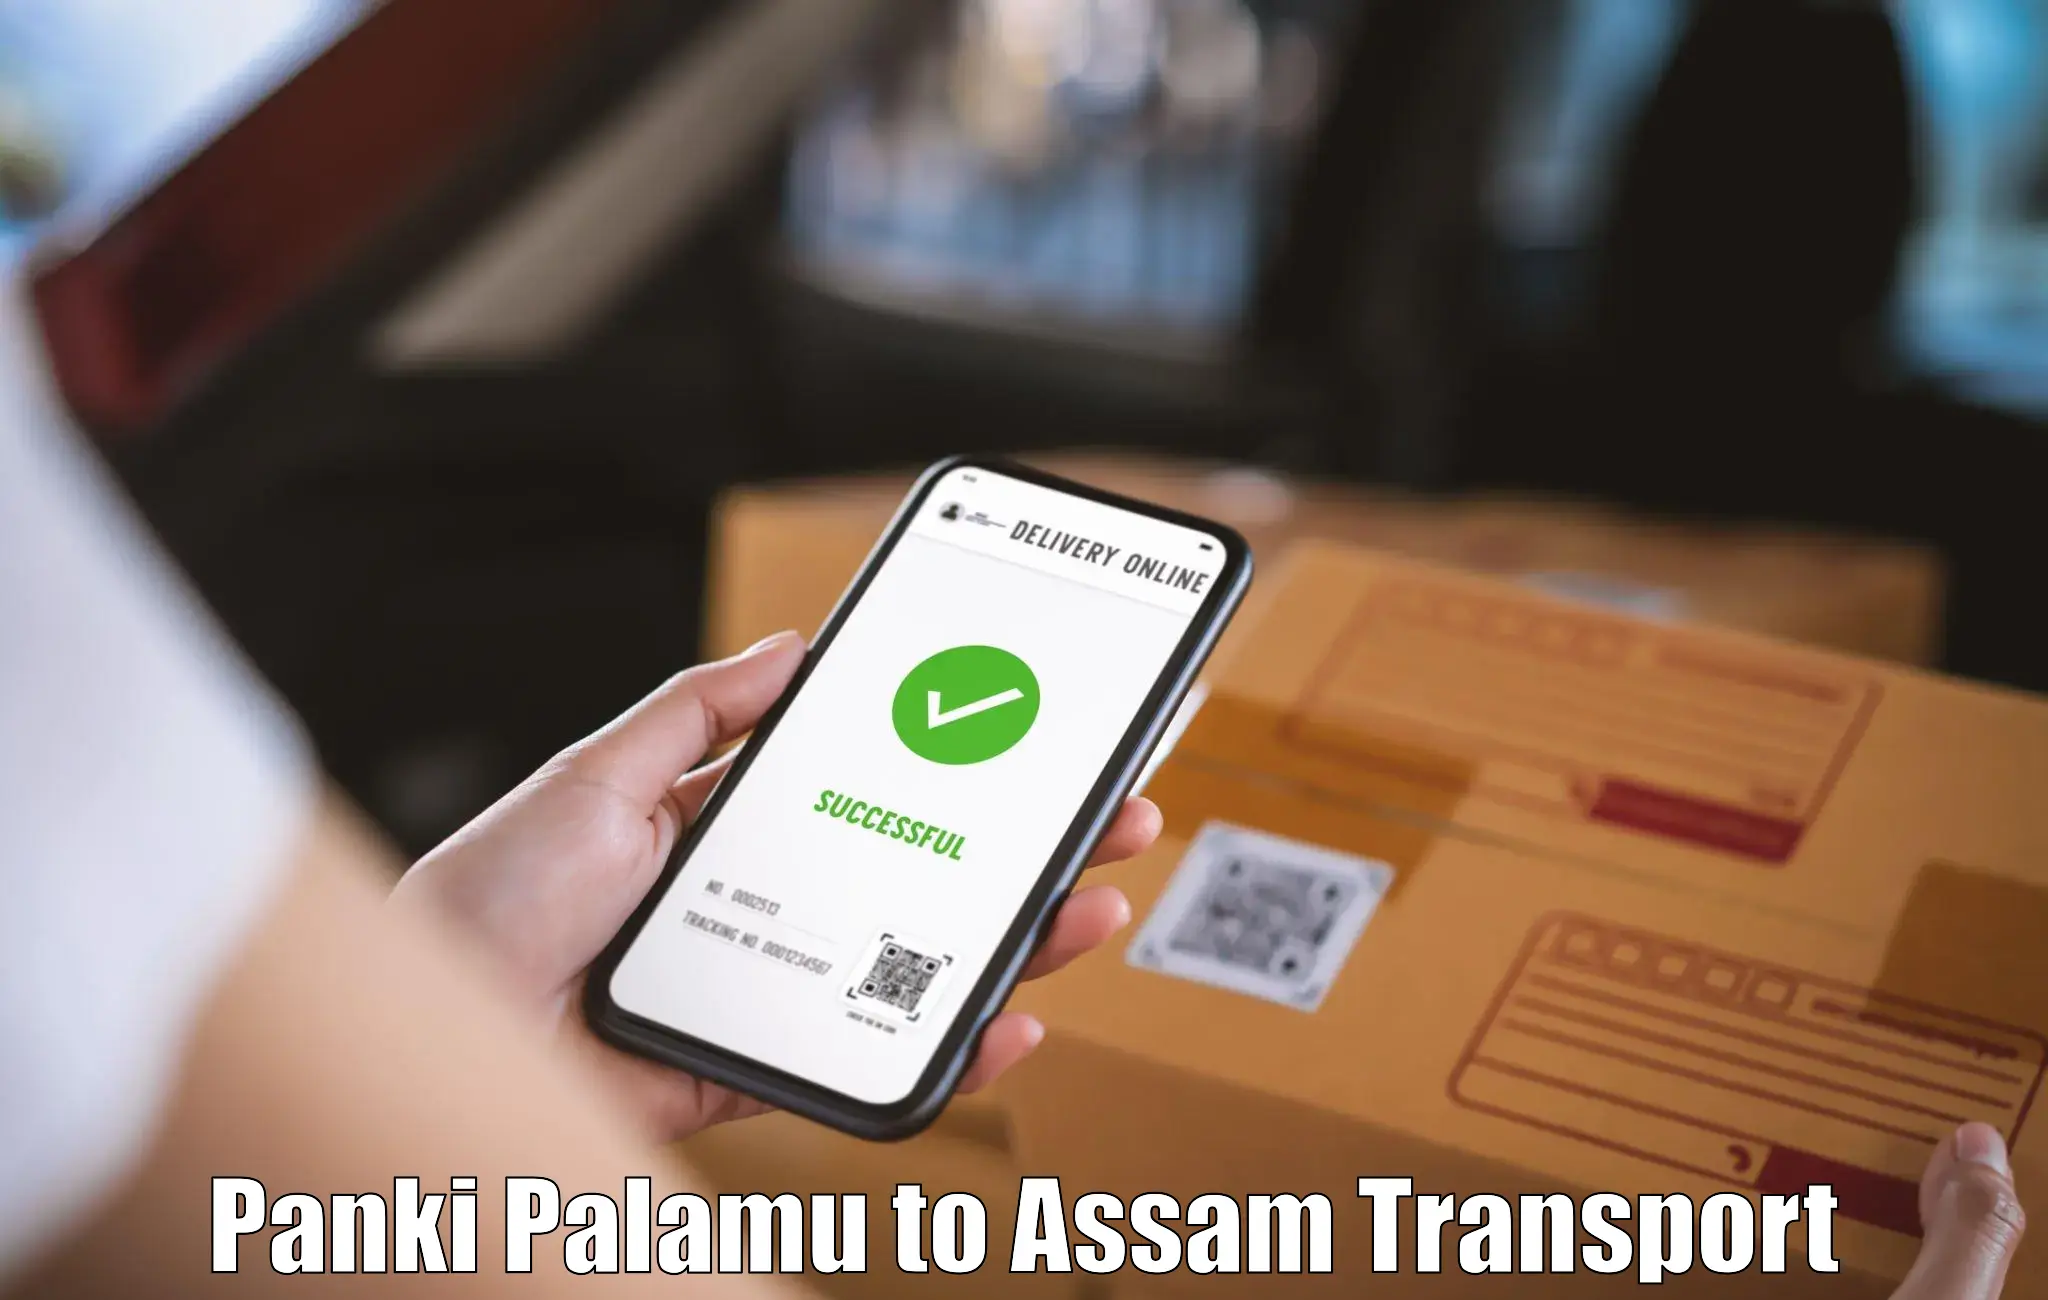 Transport in sharing Panki Palamu to Kalain